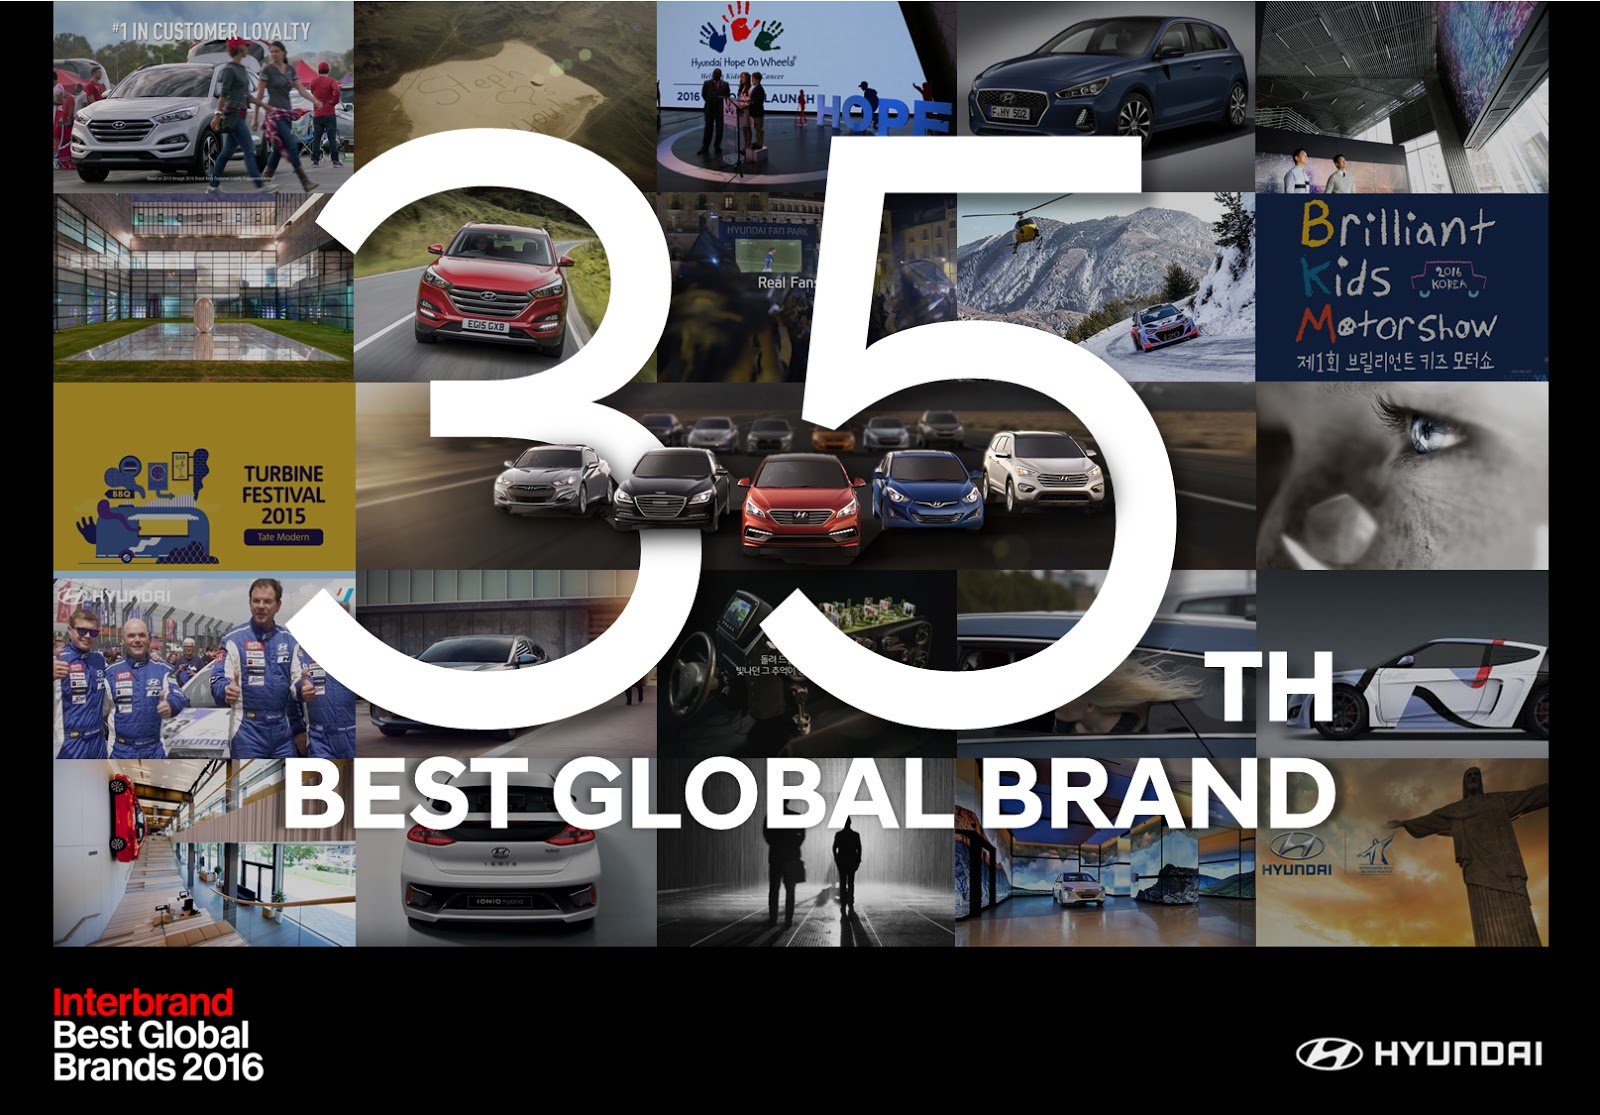 Hyundai2BMotor2Bworld2527s2B35th2Bbiggest2Bbrand2Bby2BInterbrand Η Hyundai 35η ισχυρότερη μάρκα στον κόσμο και στην 6η θέση στις αυτοκινητοβιομηχανίες!